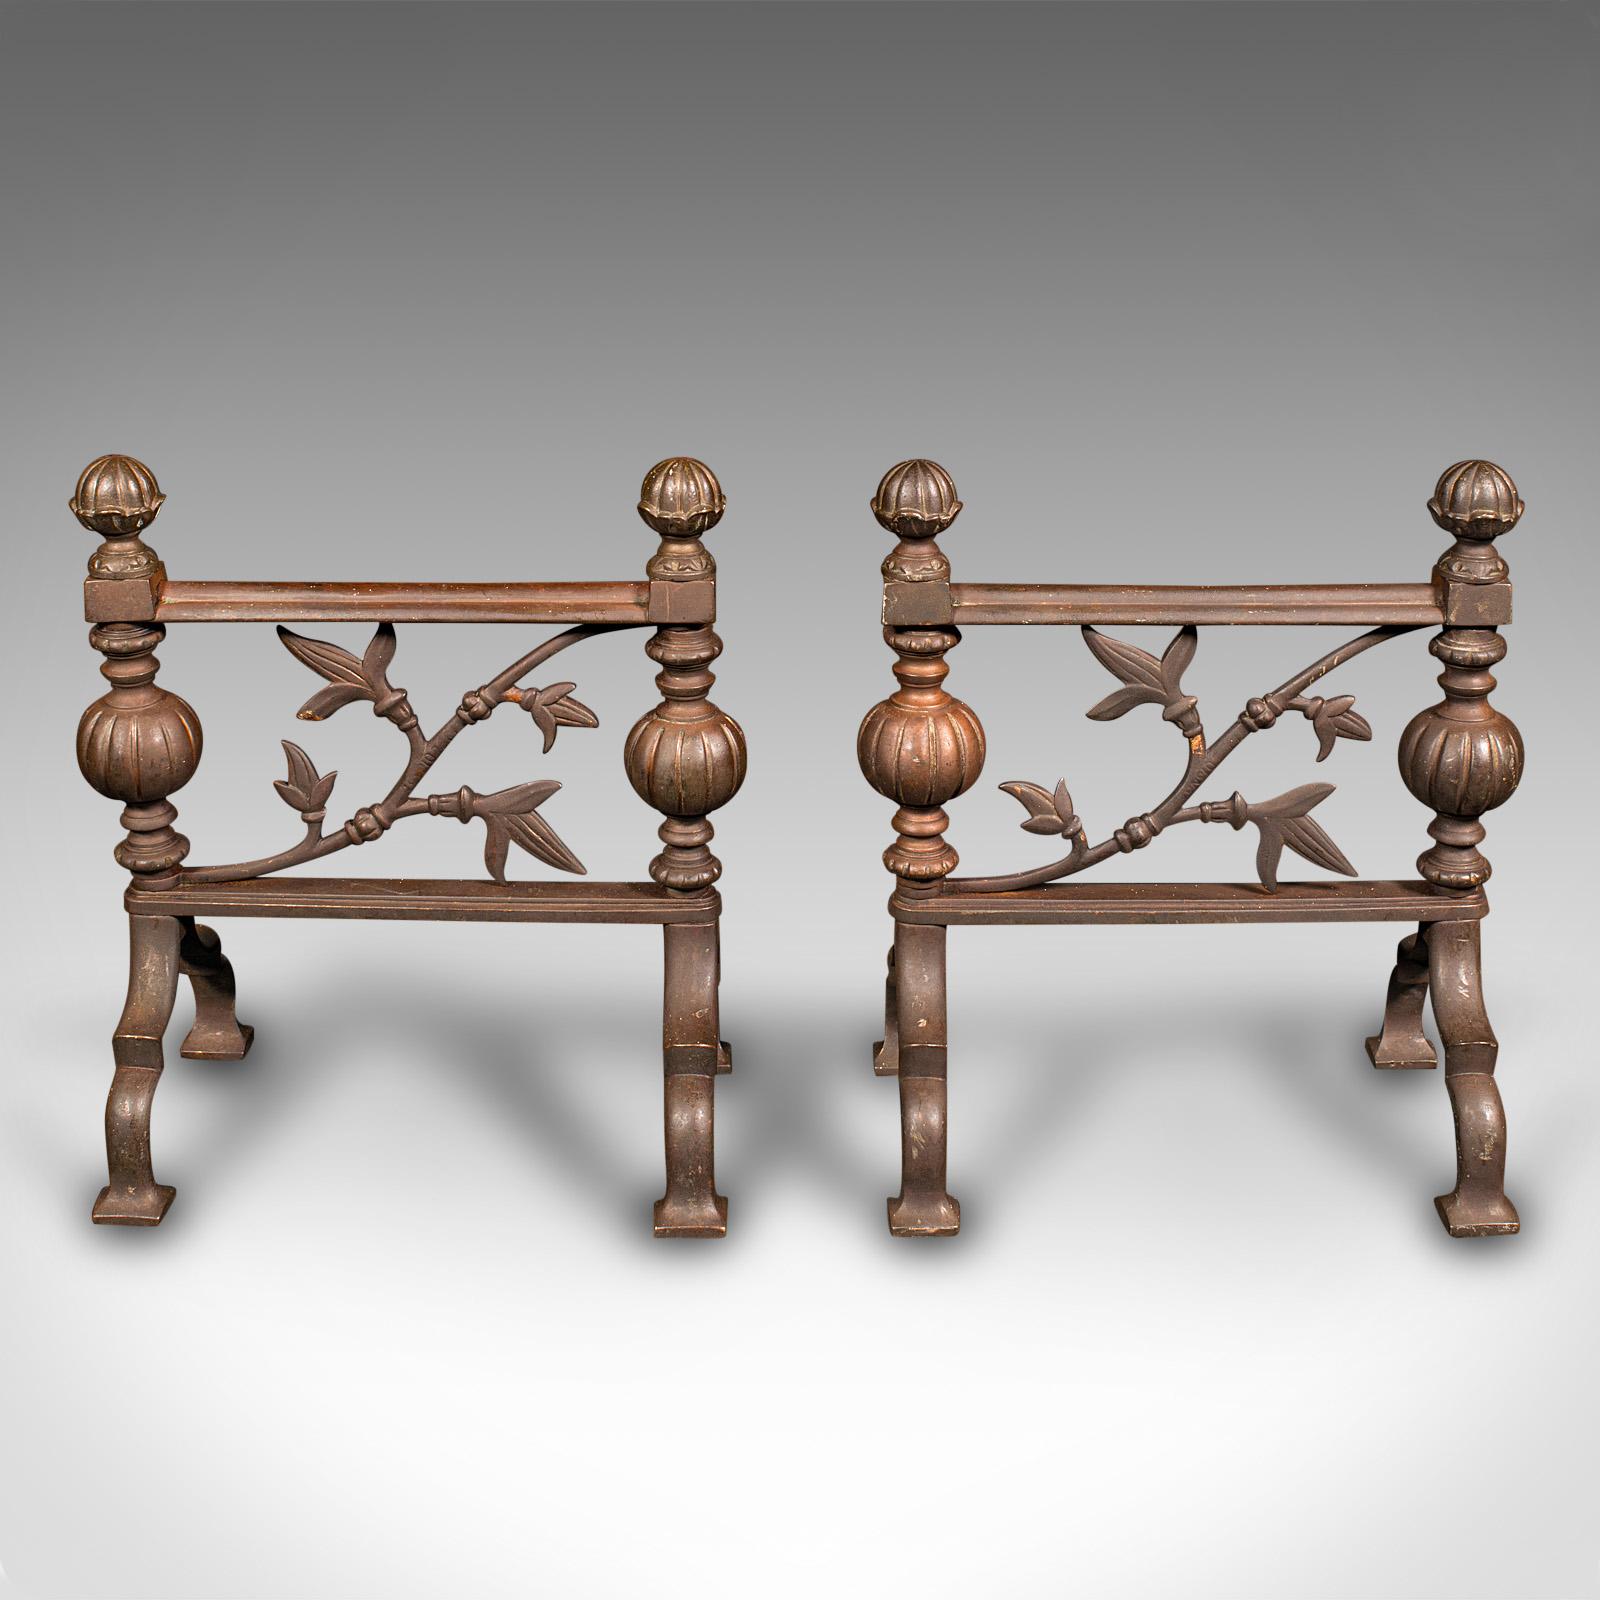 Il s'agit d'une paire d'anciens porte-outils de cheminée. Accessoire de cheminée décoratif anglais en bronze, de style esthétique, datant de la fin de l'ère victorienne, vers 1890.

Reposoirs merveilleusement décoratifs, ajoutant une touche à la